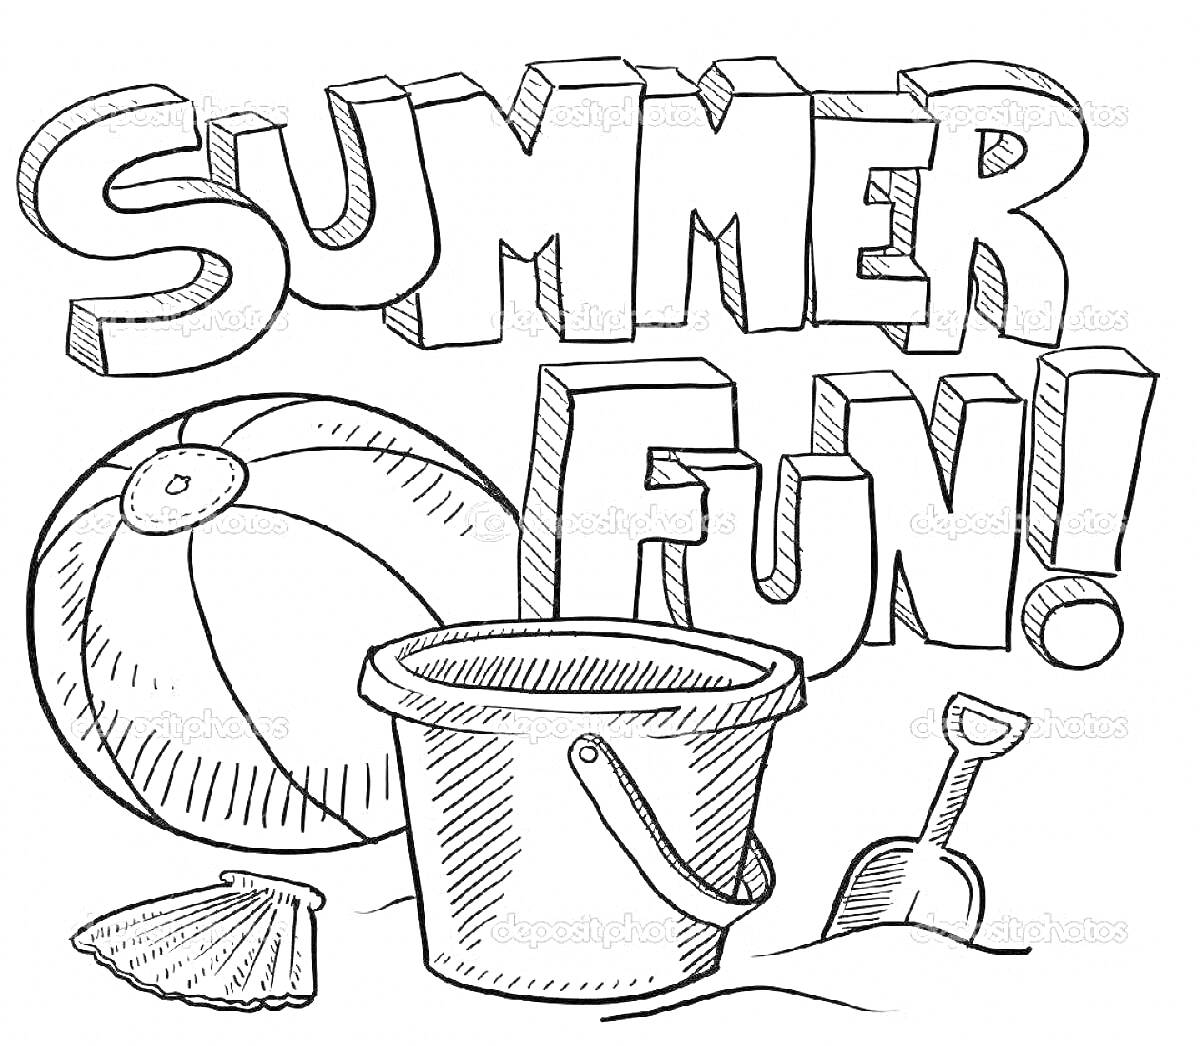 Раскраска Летние развлечения с пляжным мячом, ведром, лопаткой и ракушкой